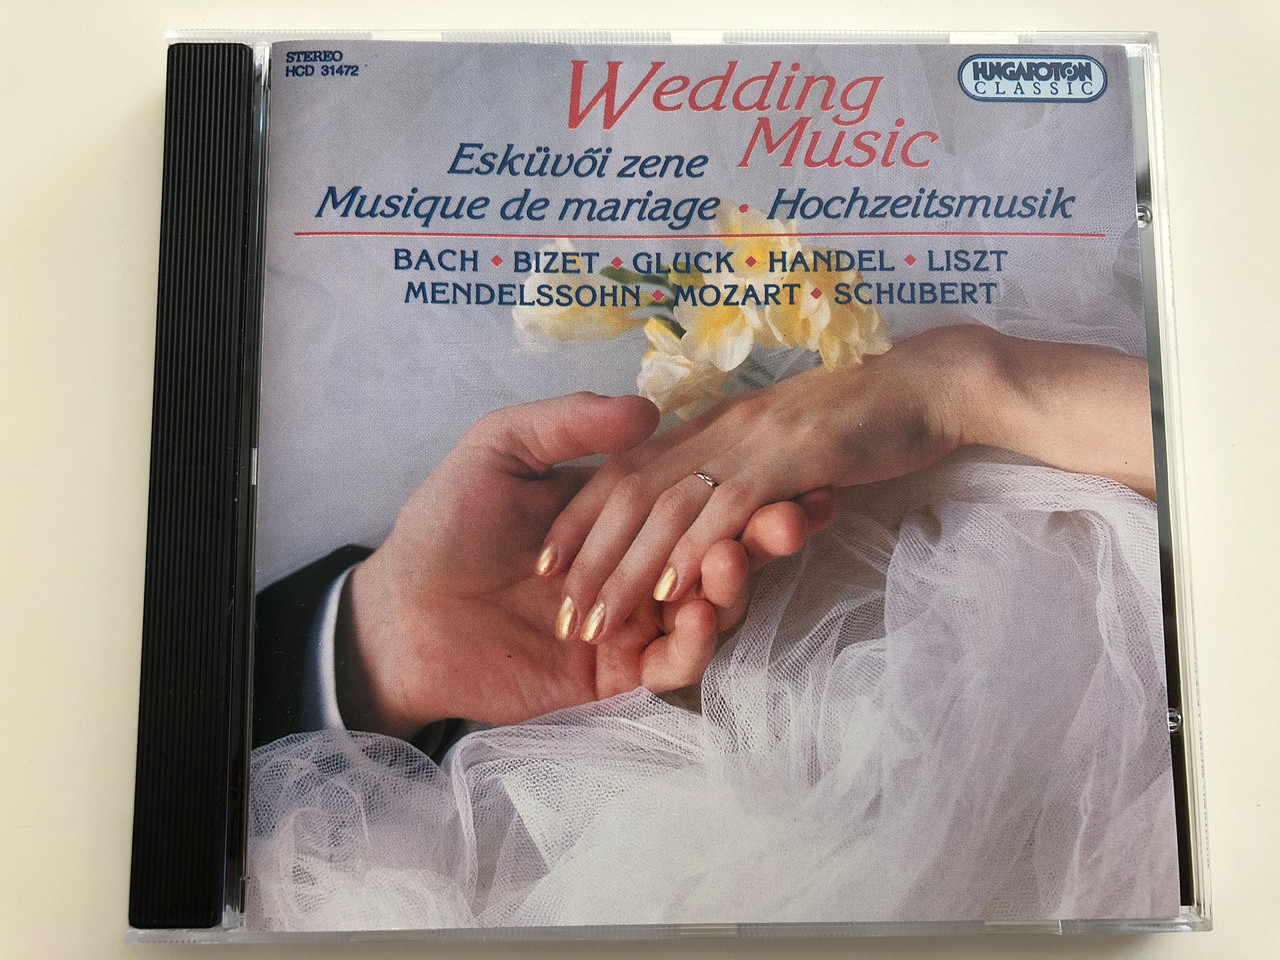 Wedding Music - Esküvői zene / Musique de mariage / Bach, Bizet, Gluck,  Handel, Liszt, Mendelssohn, Mozart, Schubert / Hungaroton Classic Audio CD  / HCD 31472 - bibleinmylanguage